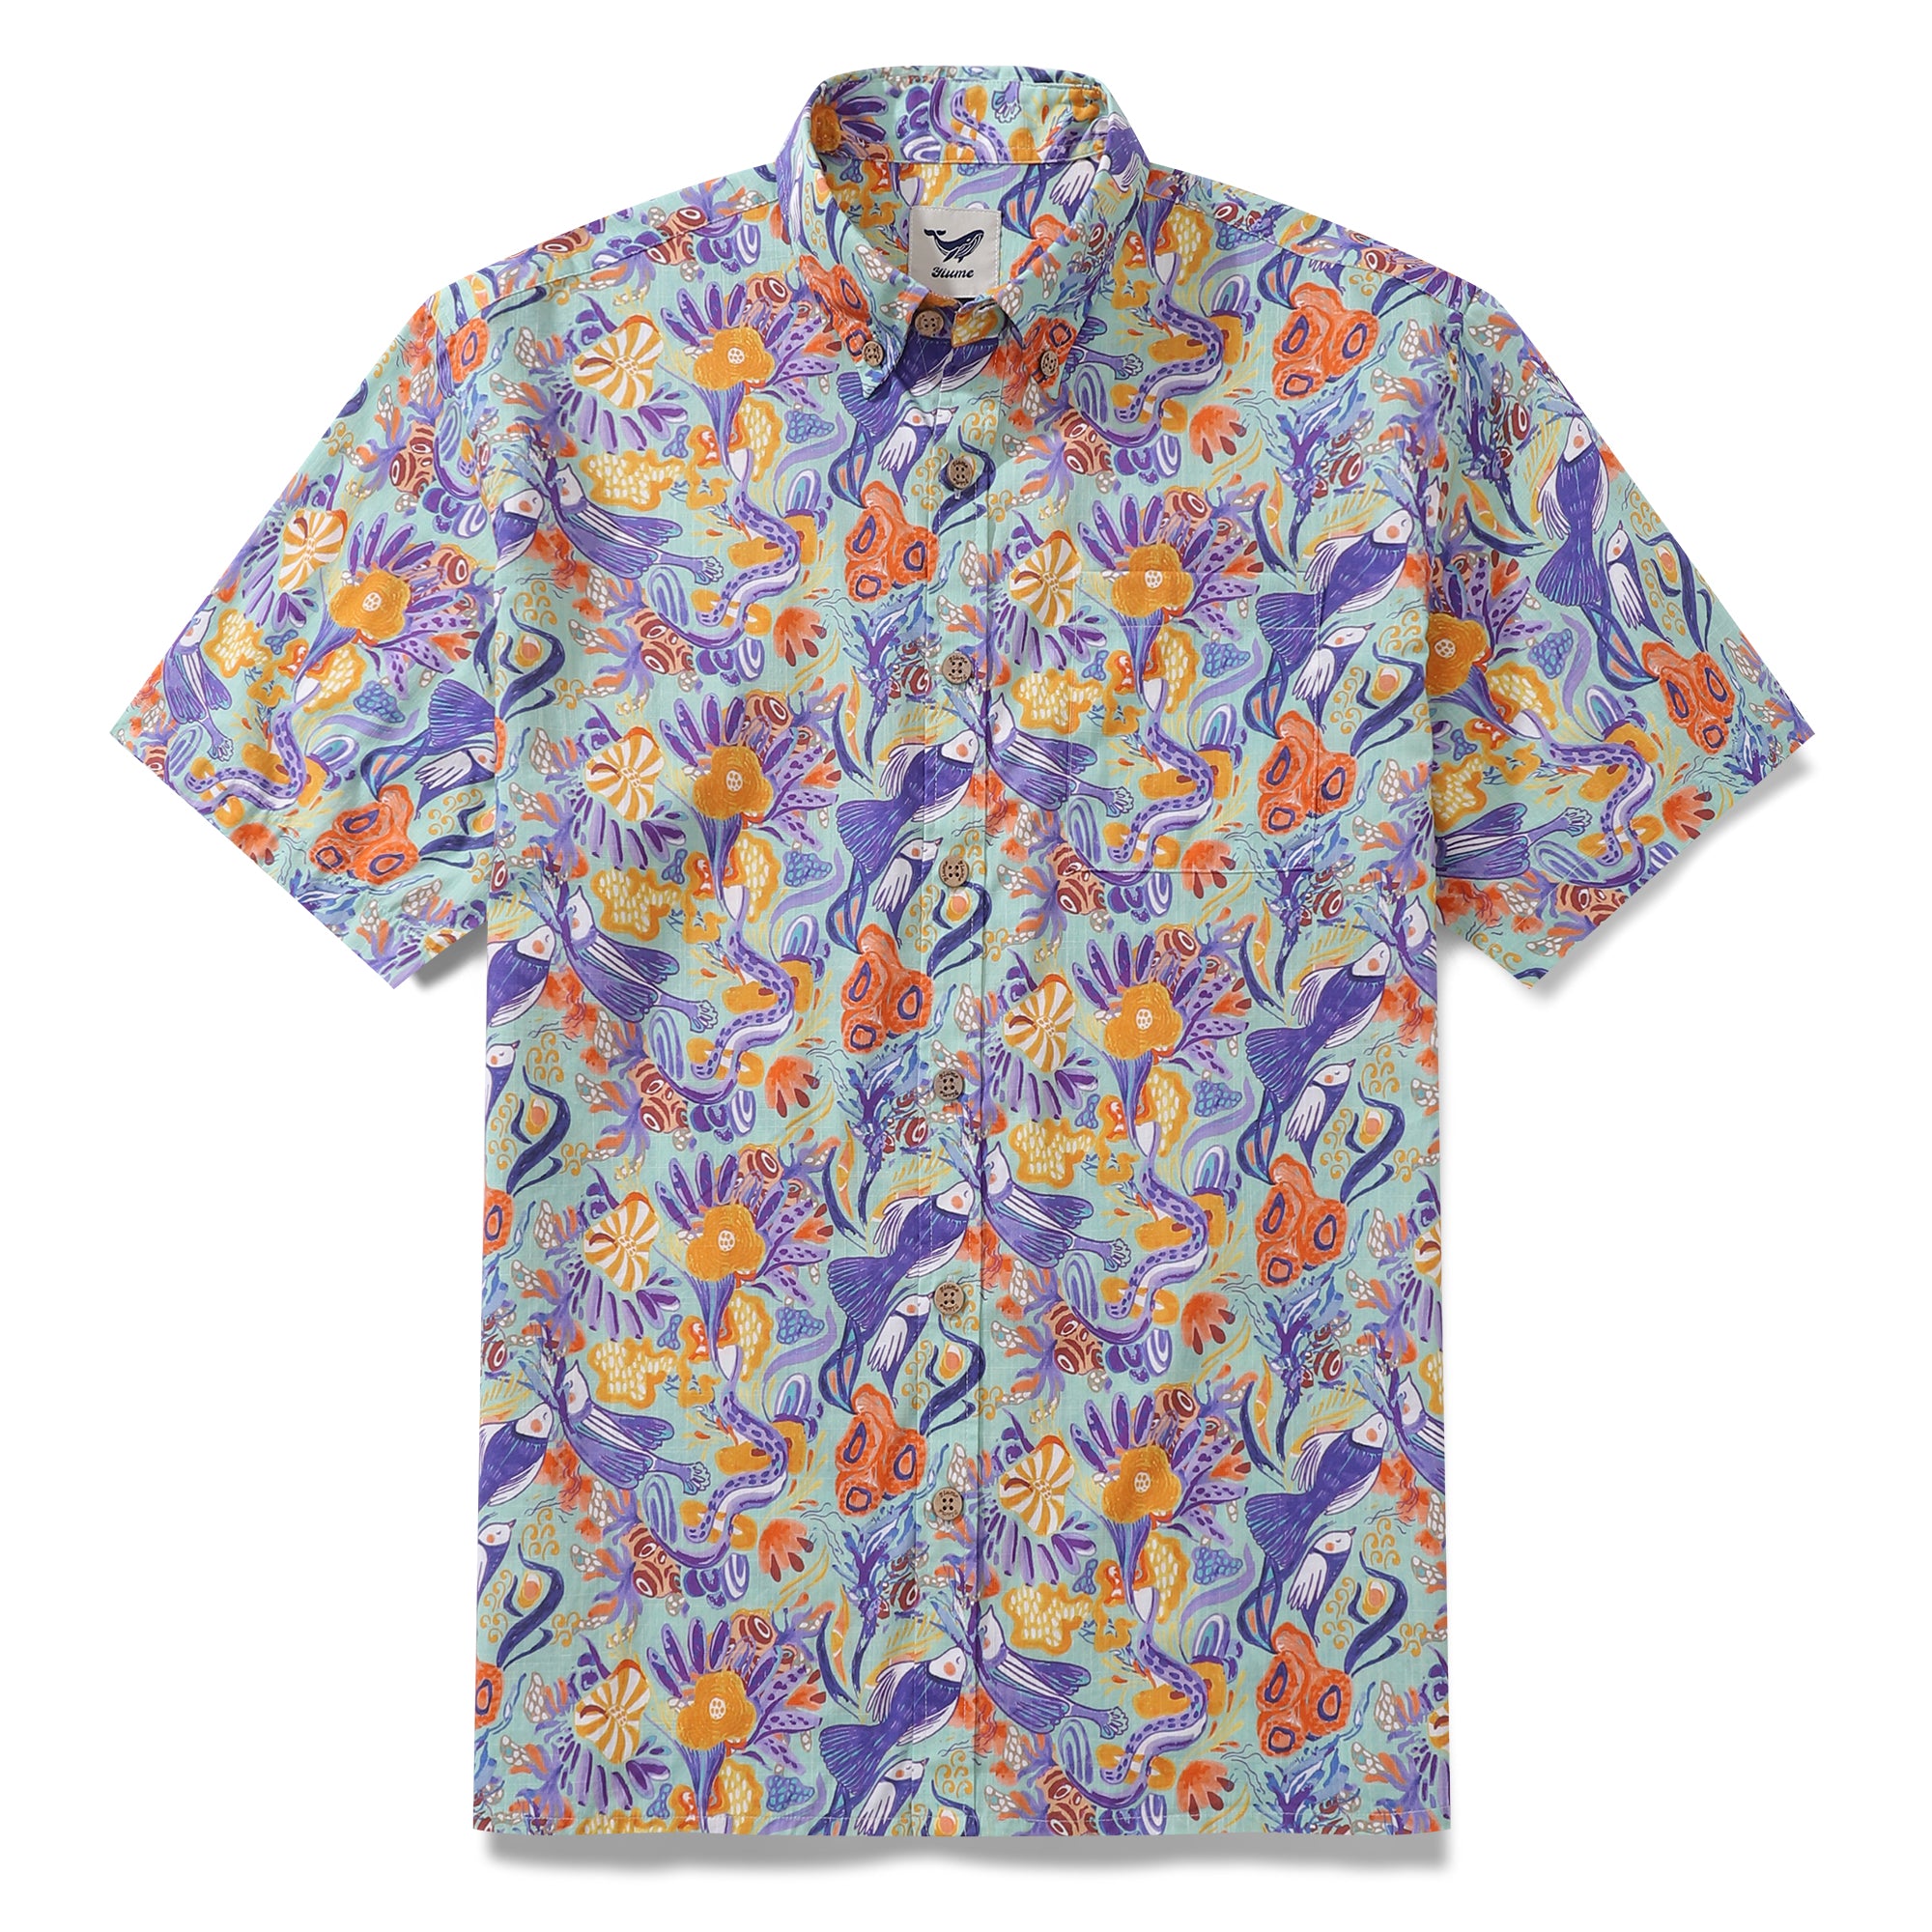 Men's Hawaiian Shirt Mermaid Birds By Lucille Pattern Cotton Button-down Short Sleeve Aloha Shirt